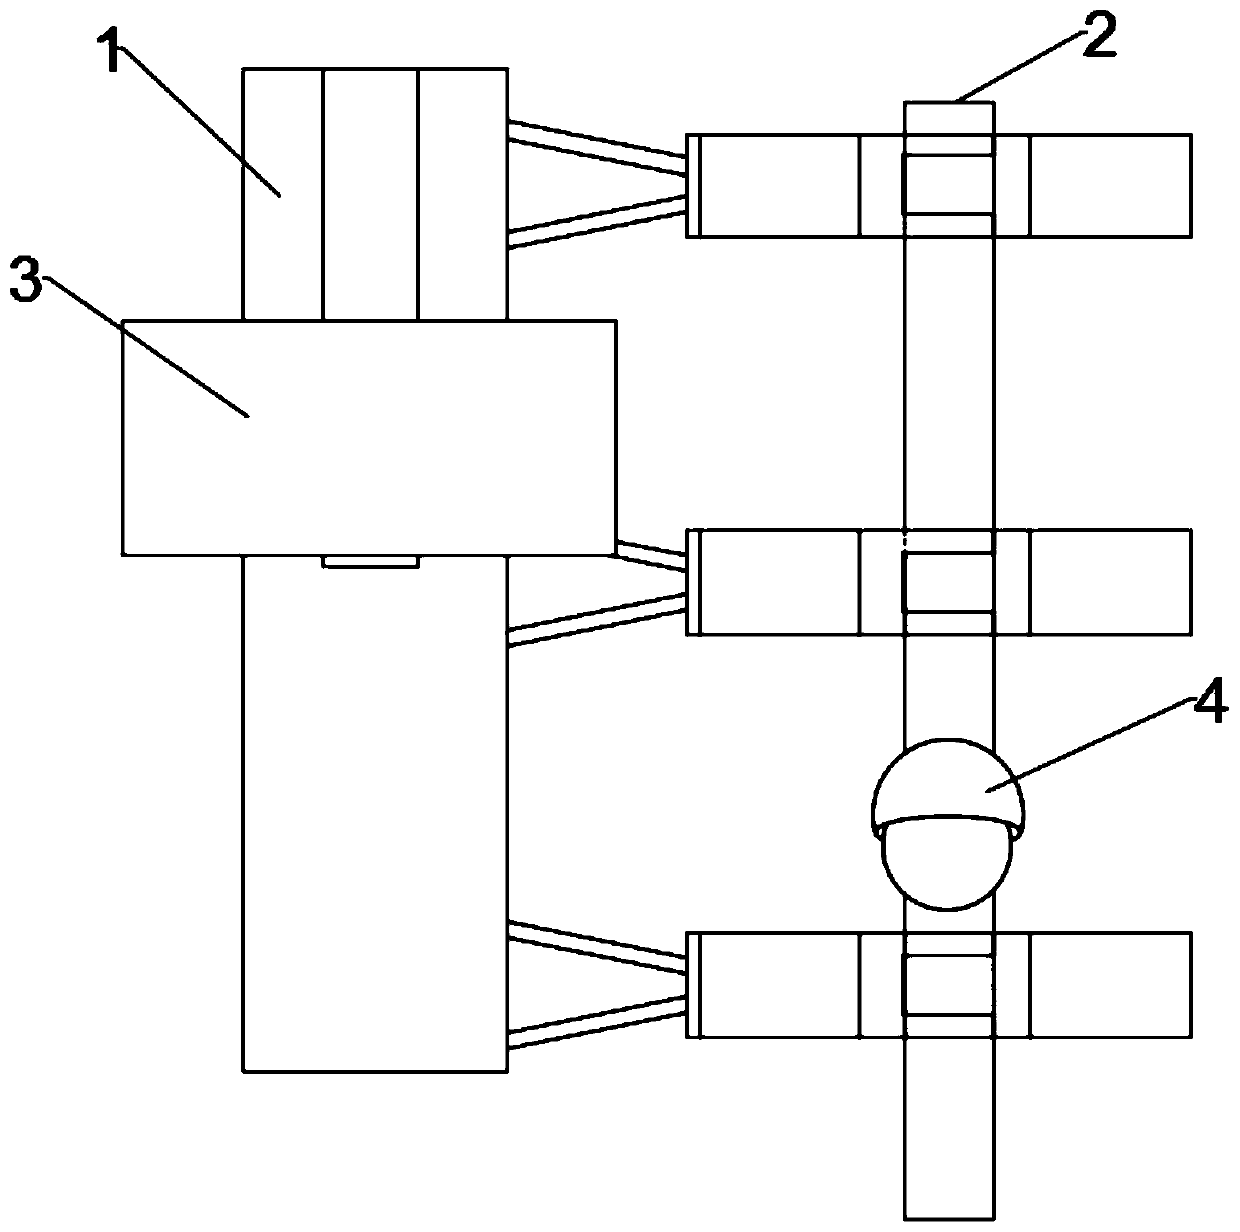 Camera rotation mechanism and control method of a solar infrared sensor camera